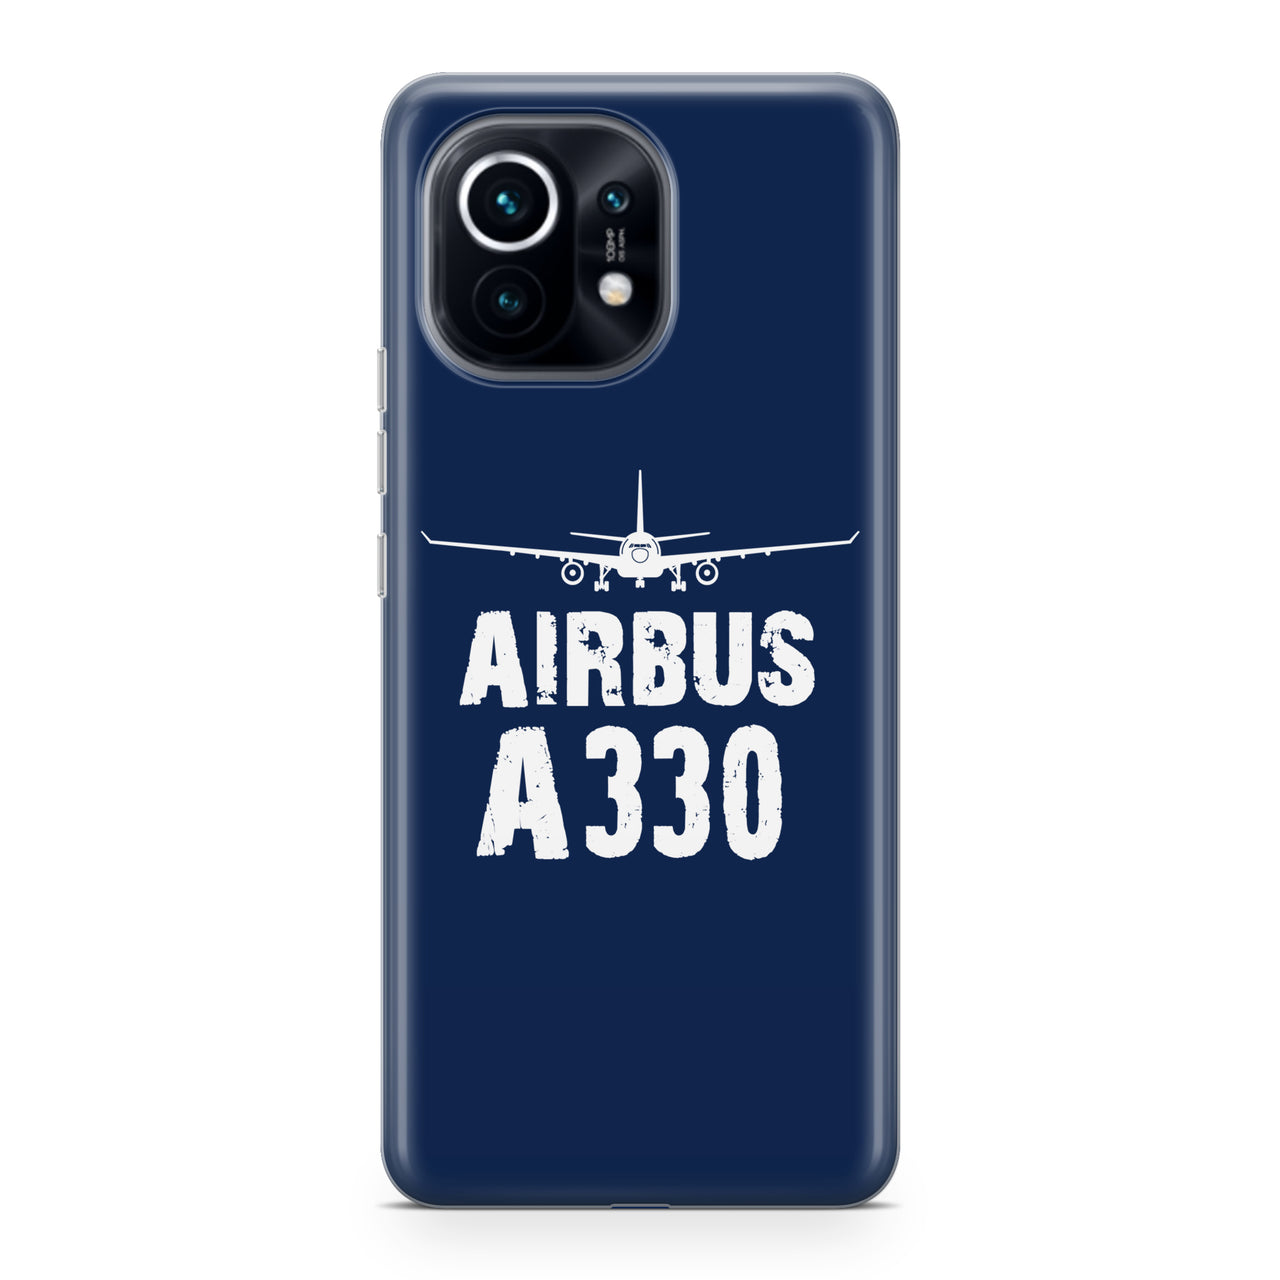 Airbus A330 & Plane Designed Xiaomi Cases